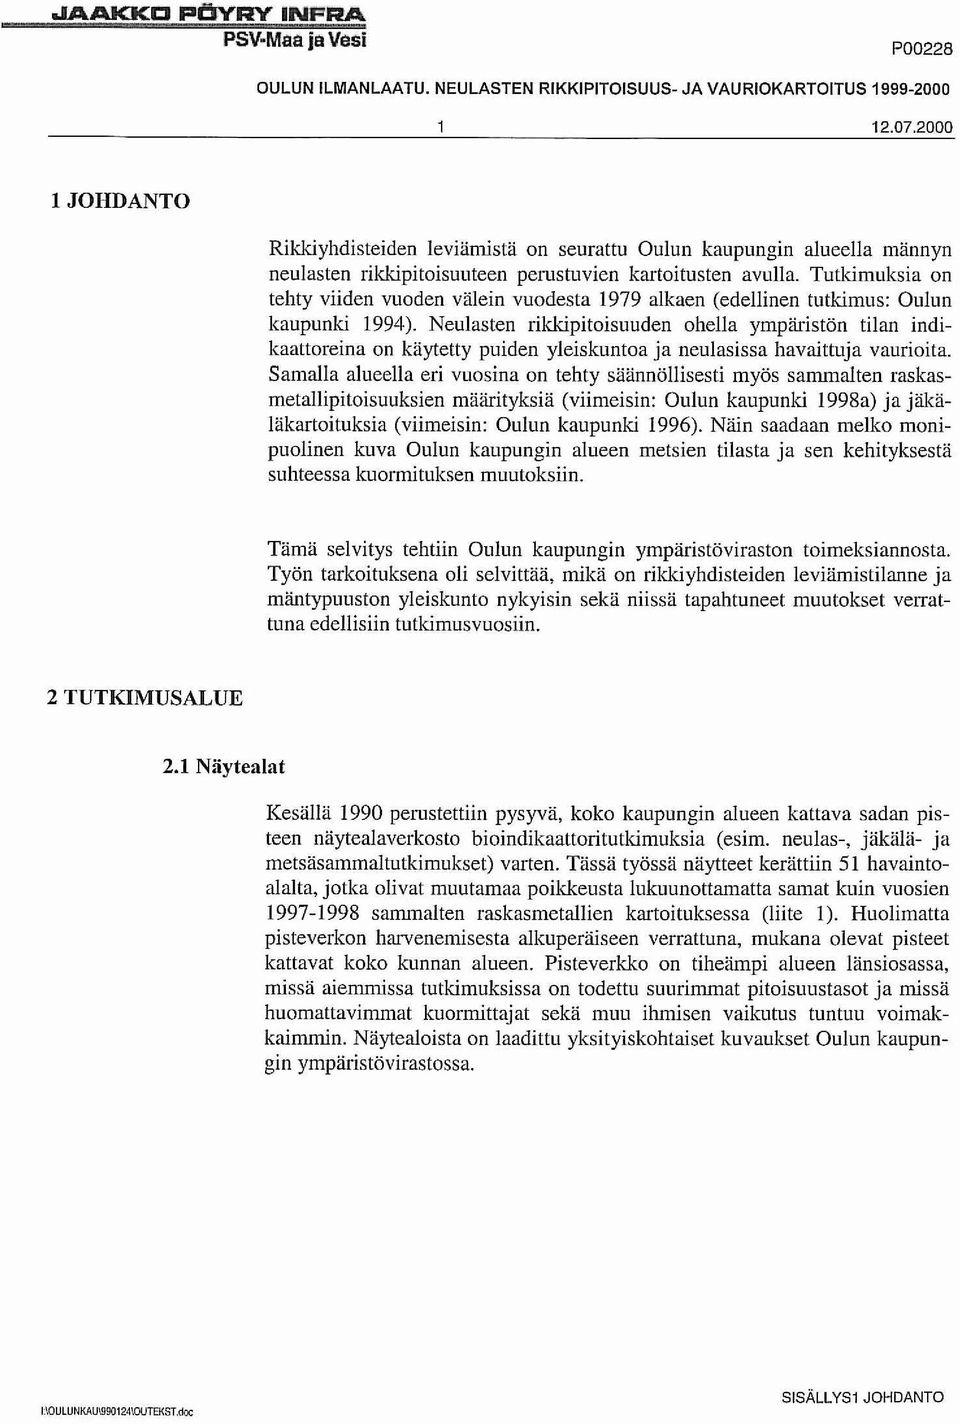 Tutkimuksia on tehty viiden vuoden välein vuodesta 1979 alkaen (edellinen tutkimus: Oulun kaupunki 1994).